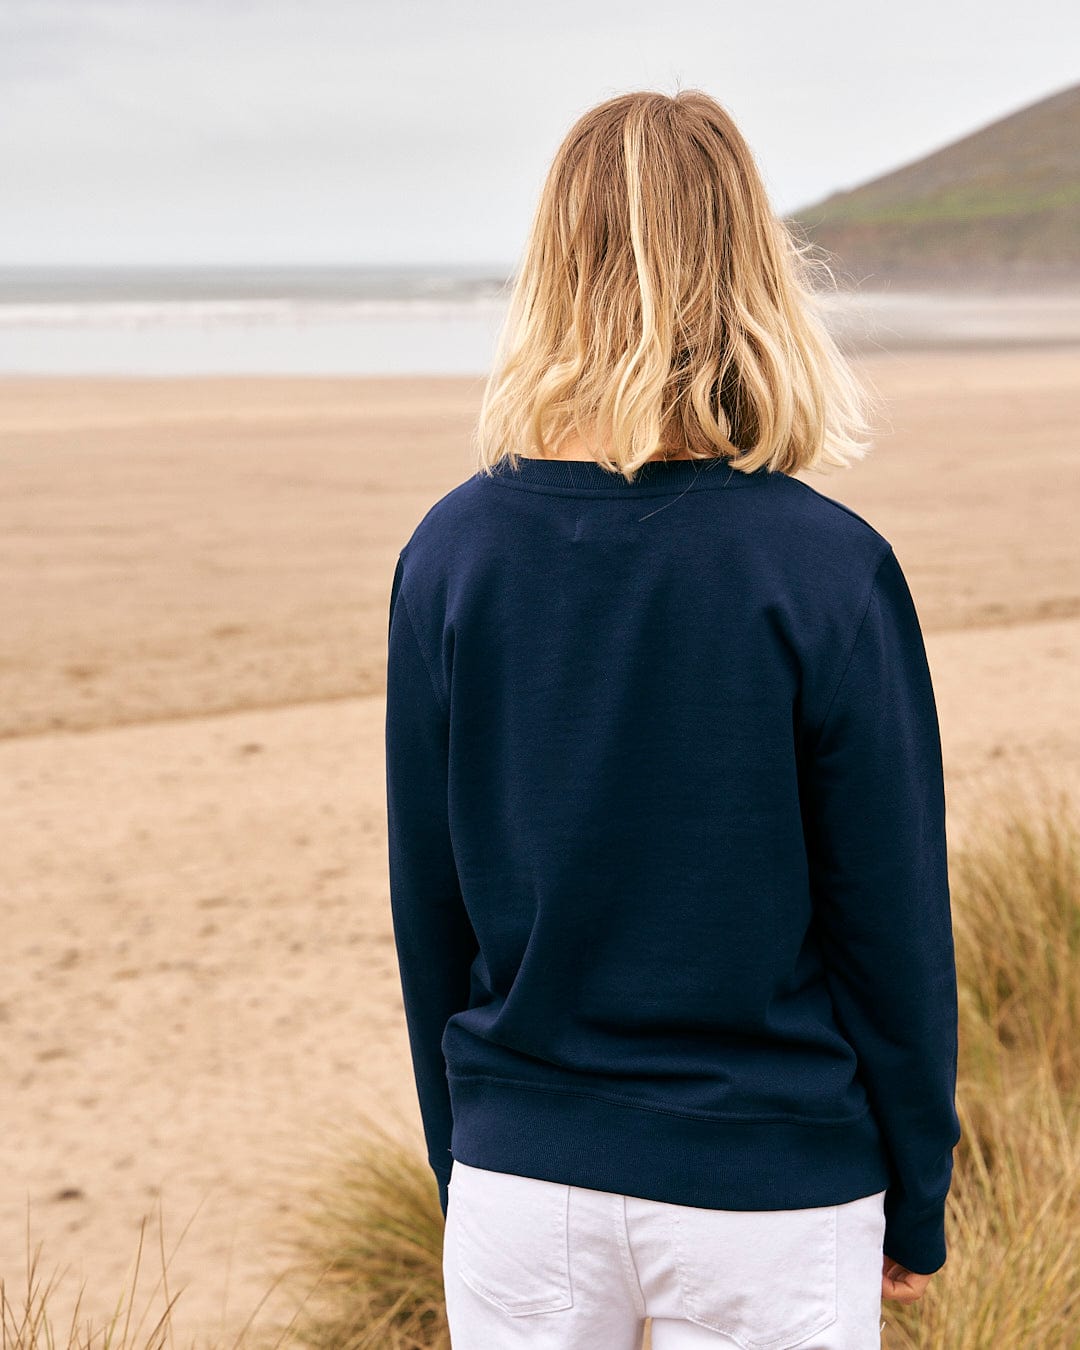 A woman standing on the beach wearing a Saltrock Celeste Stripe - Womens Crew Sweat - Blue sweatshirt.